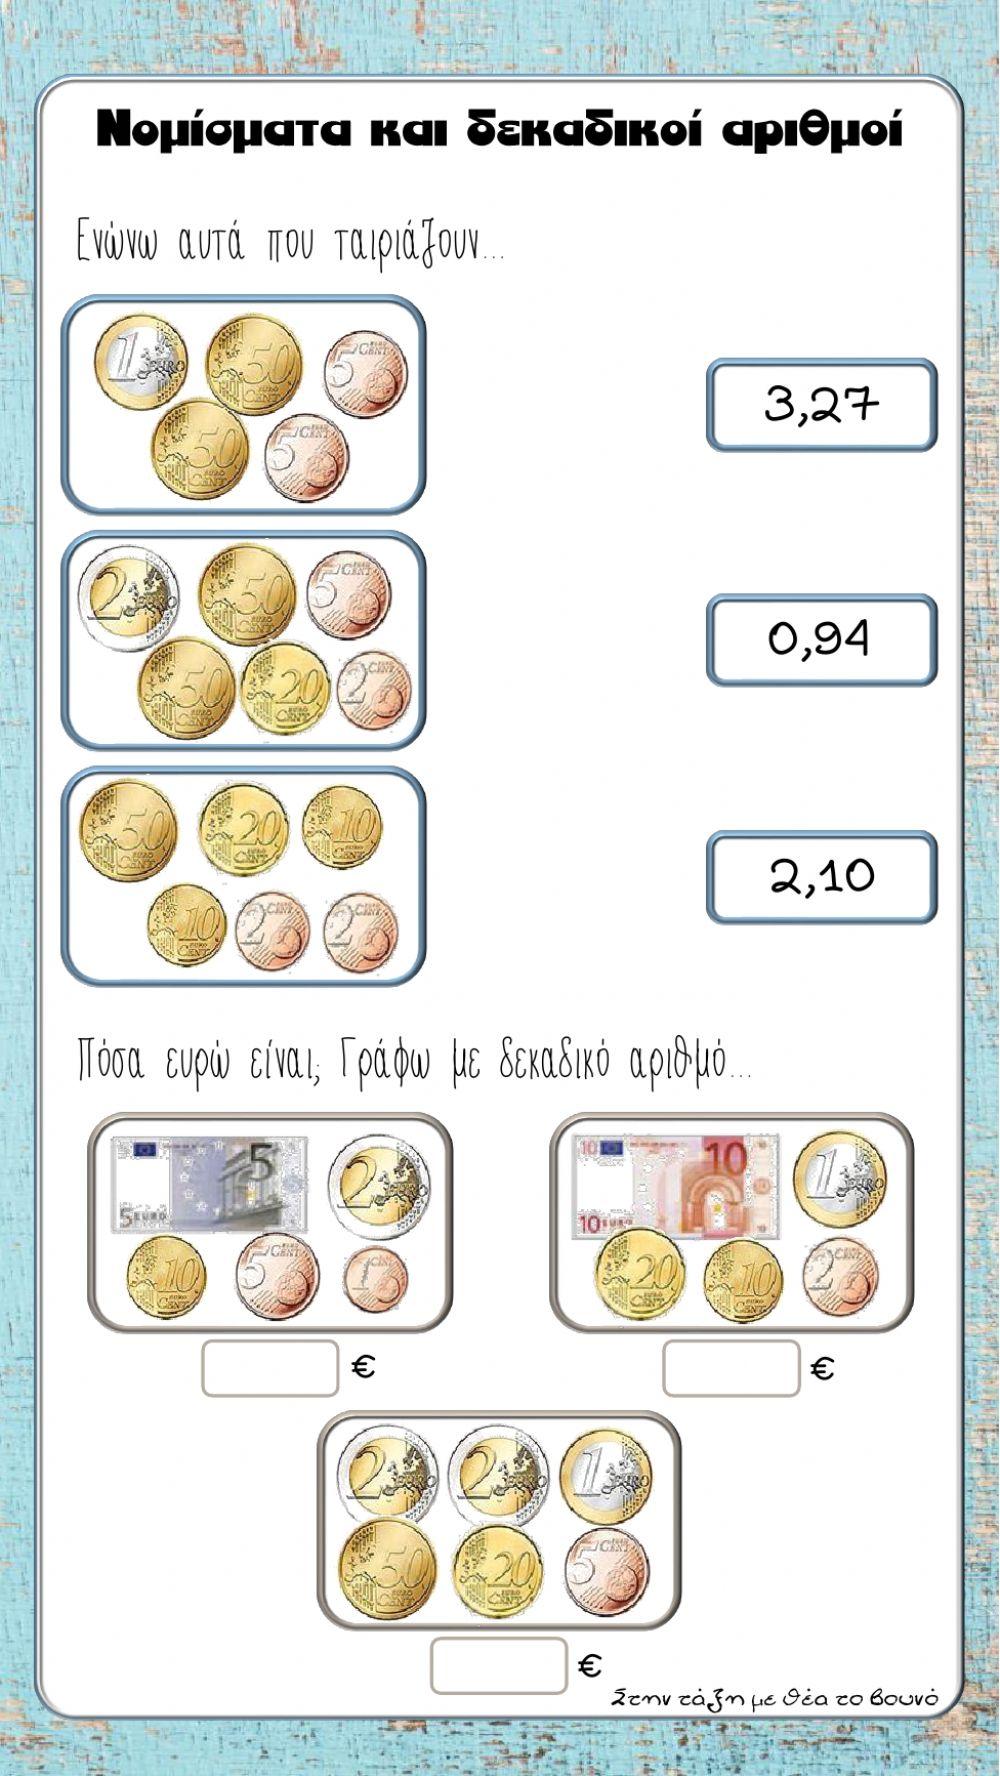 Νομίσματα και δεκαδικοί αριθμοί